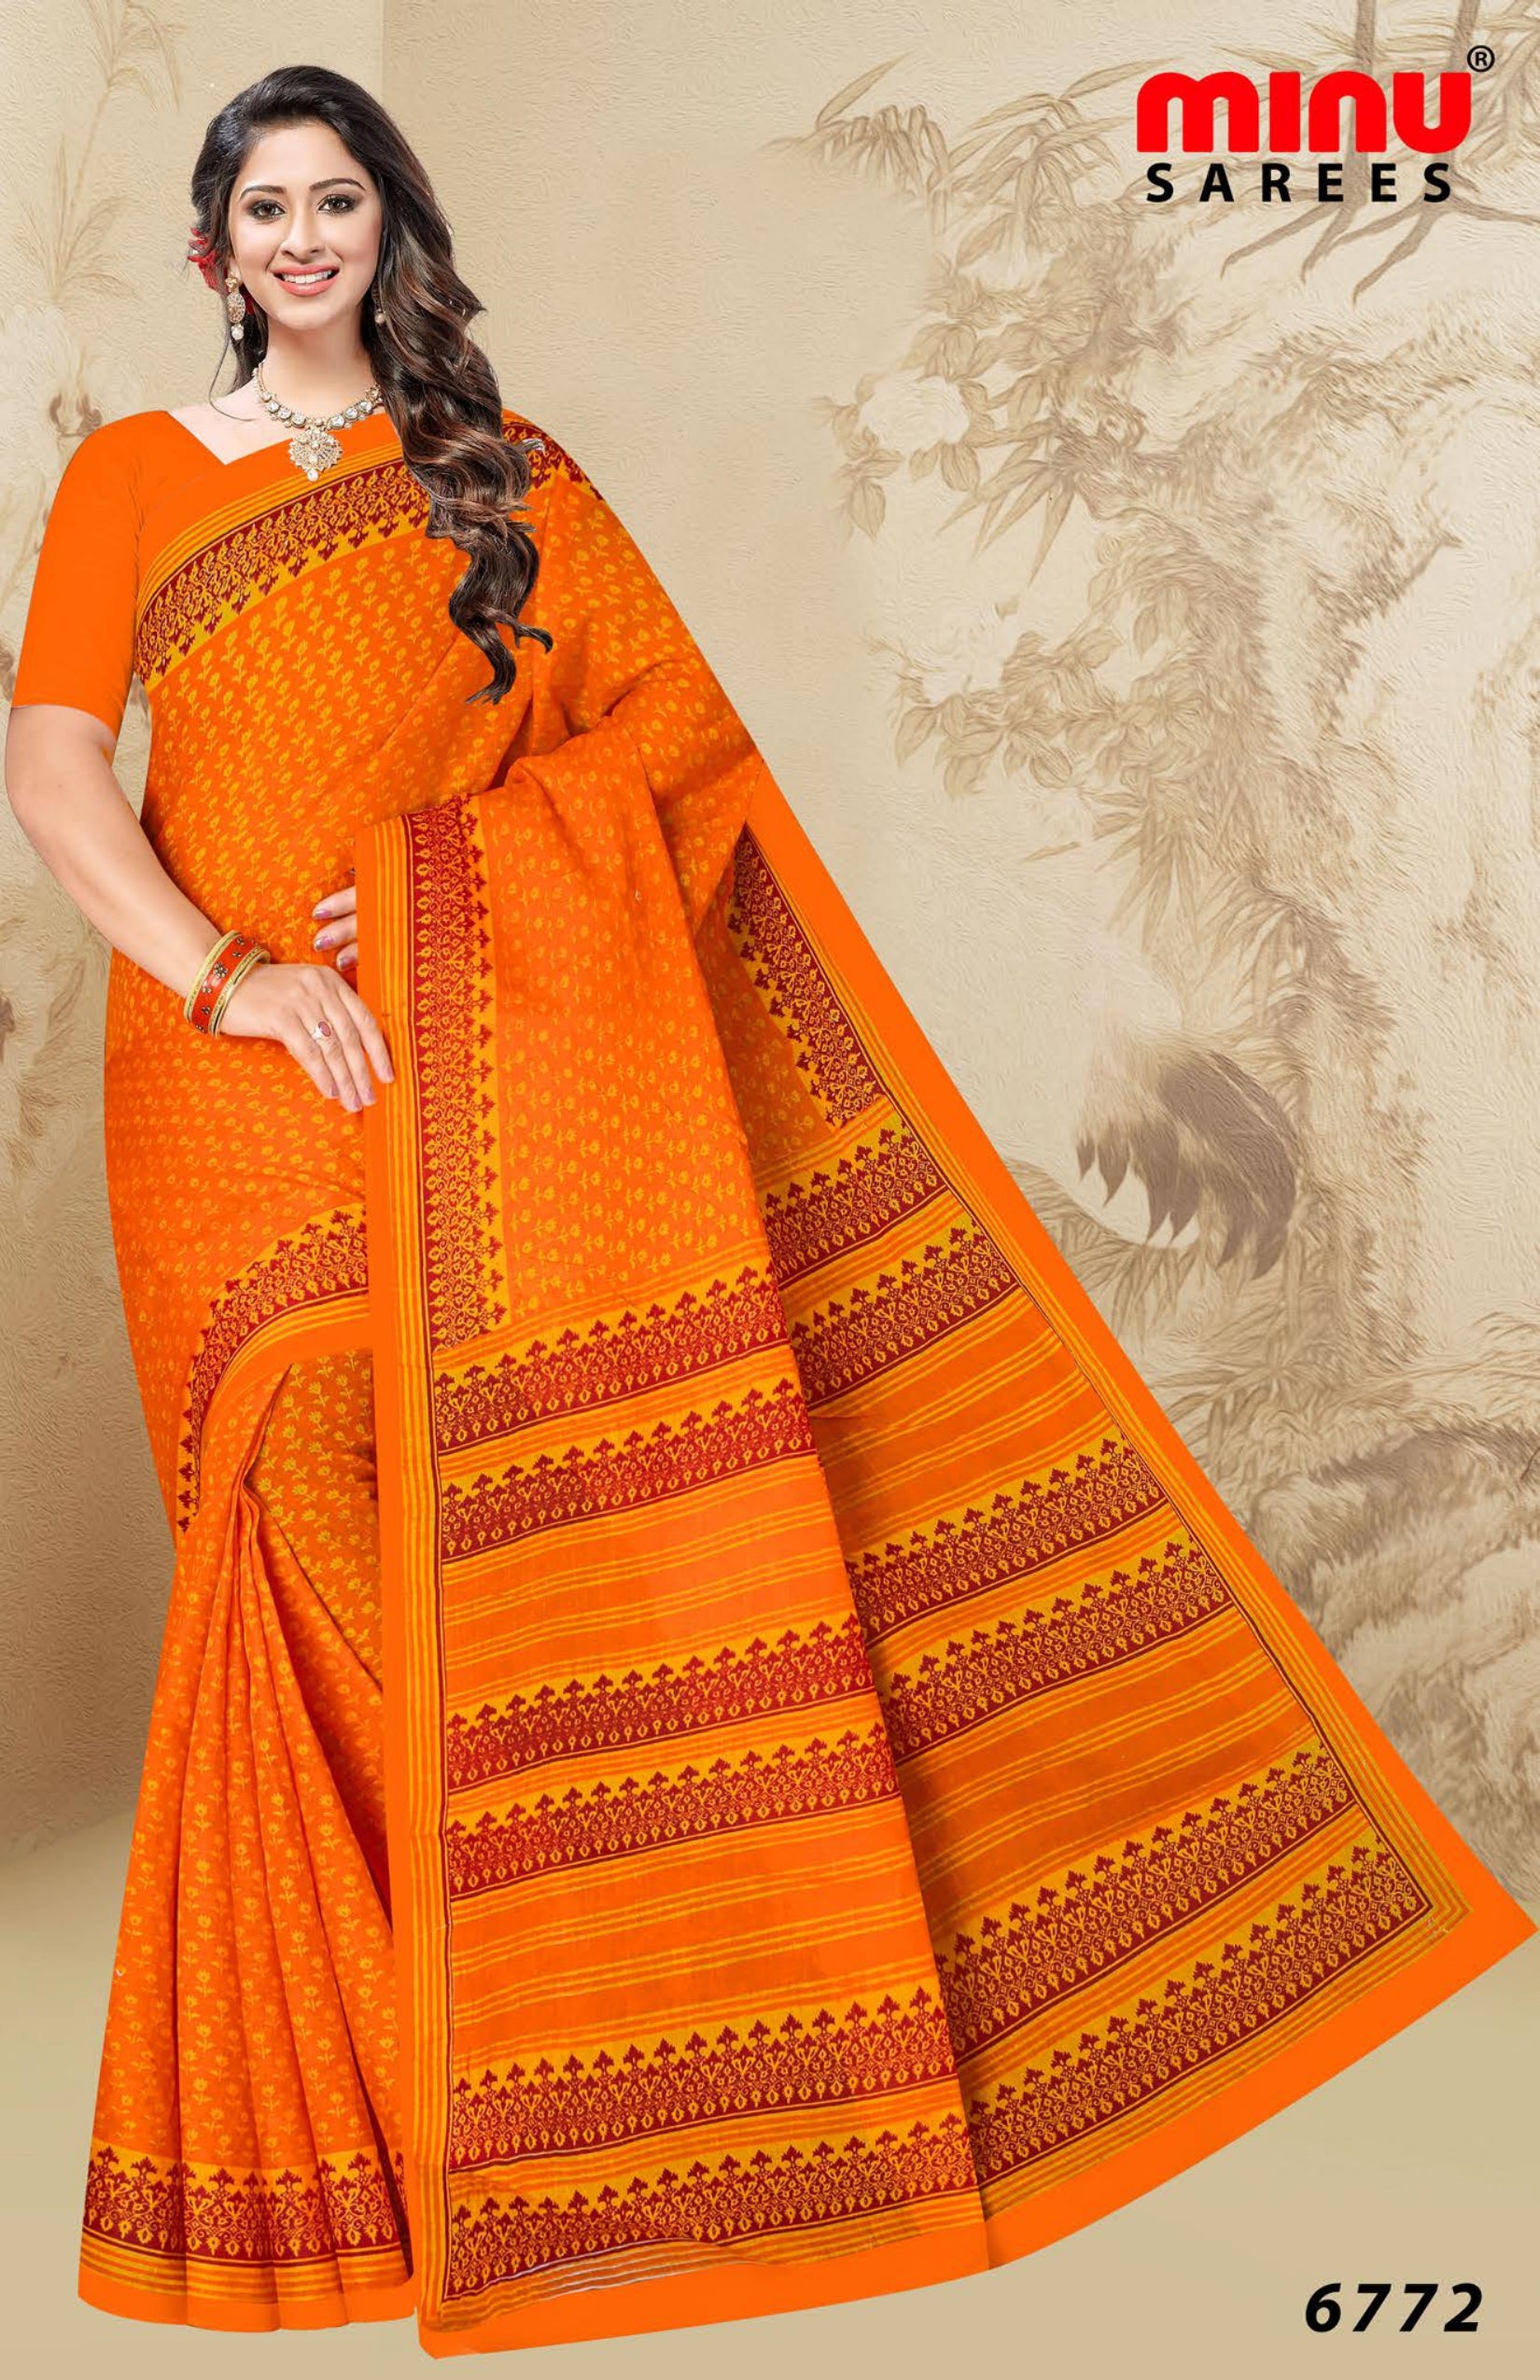 women wearing orange cotton printed saree 